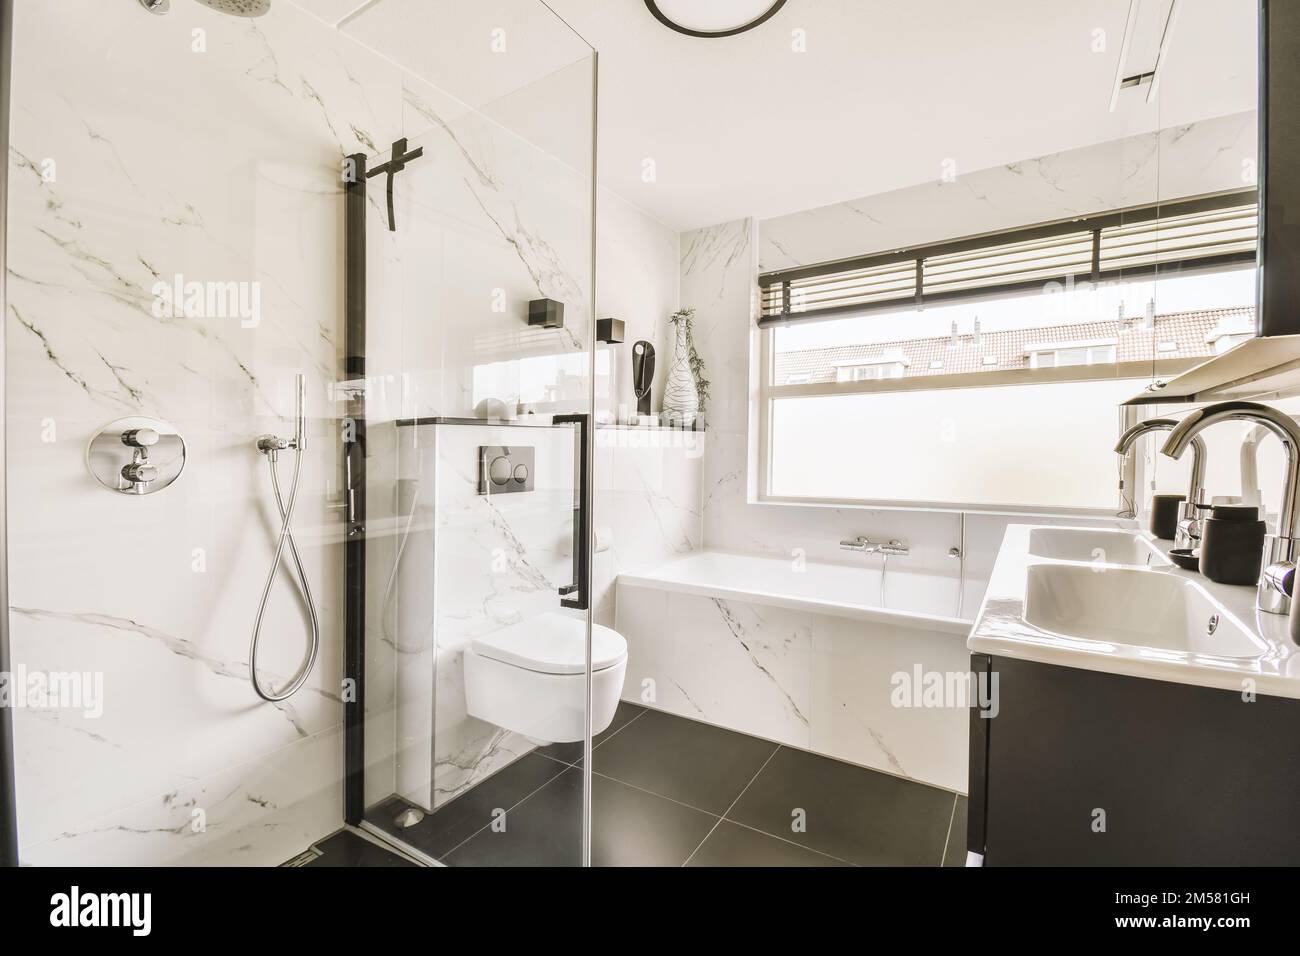 un moderno cuarto de baño con azulejos de mármol blanco y negro en las paredes, ducha y wc en la zona de la esquina Foto de stock